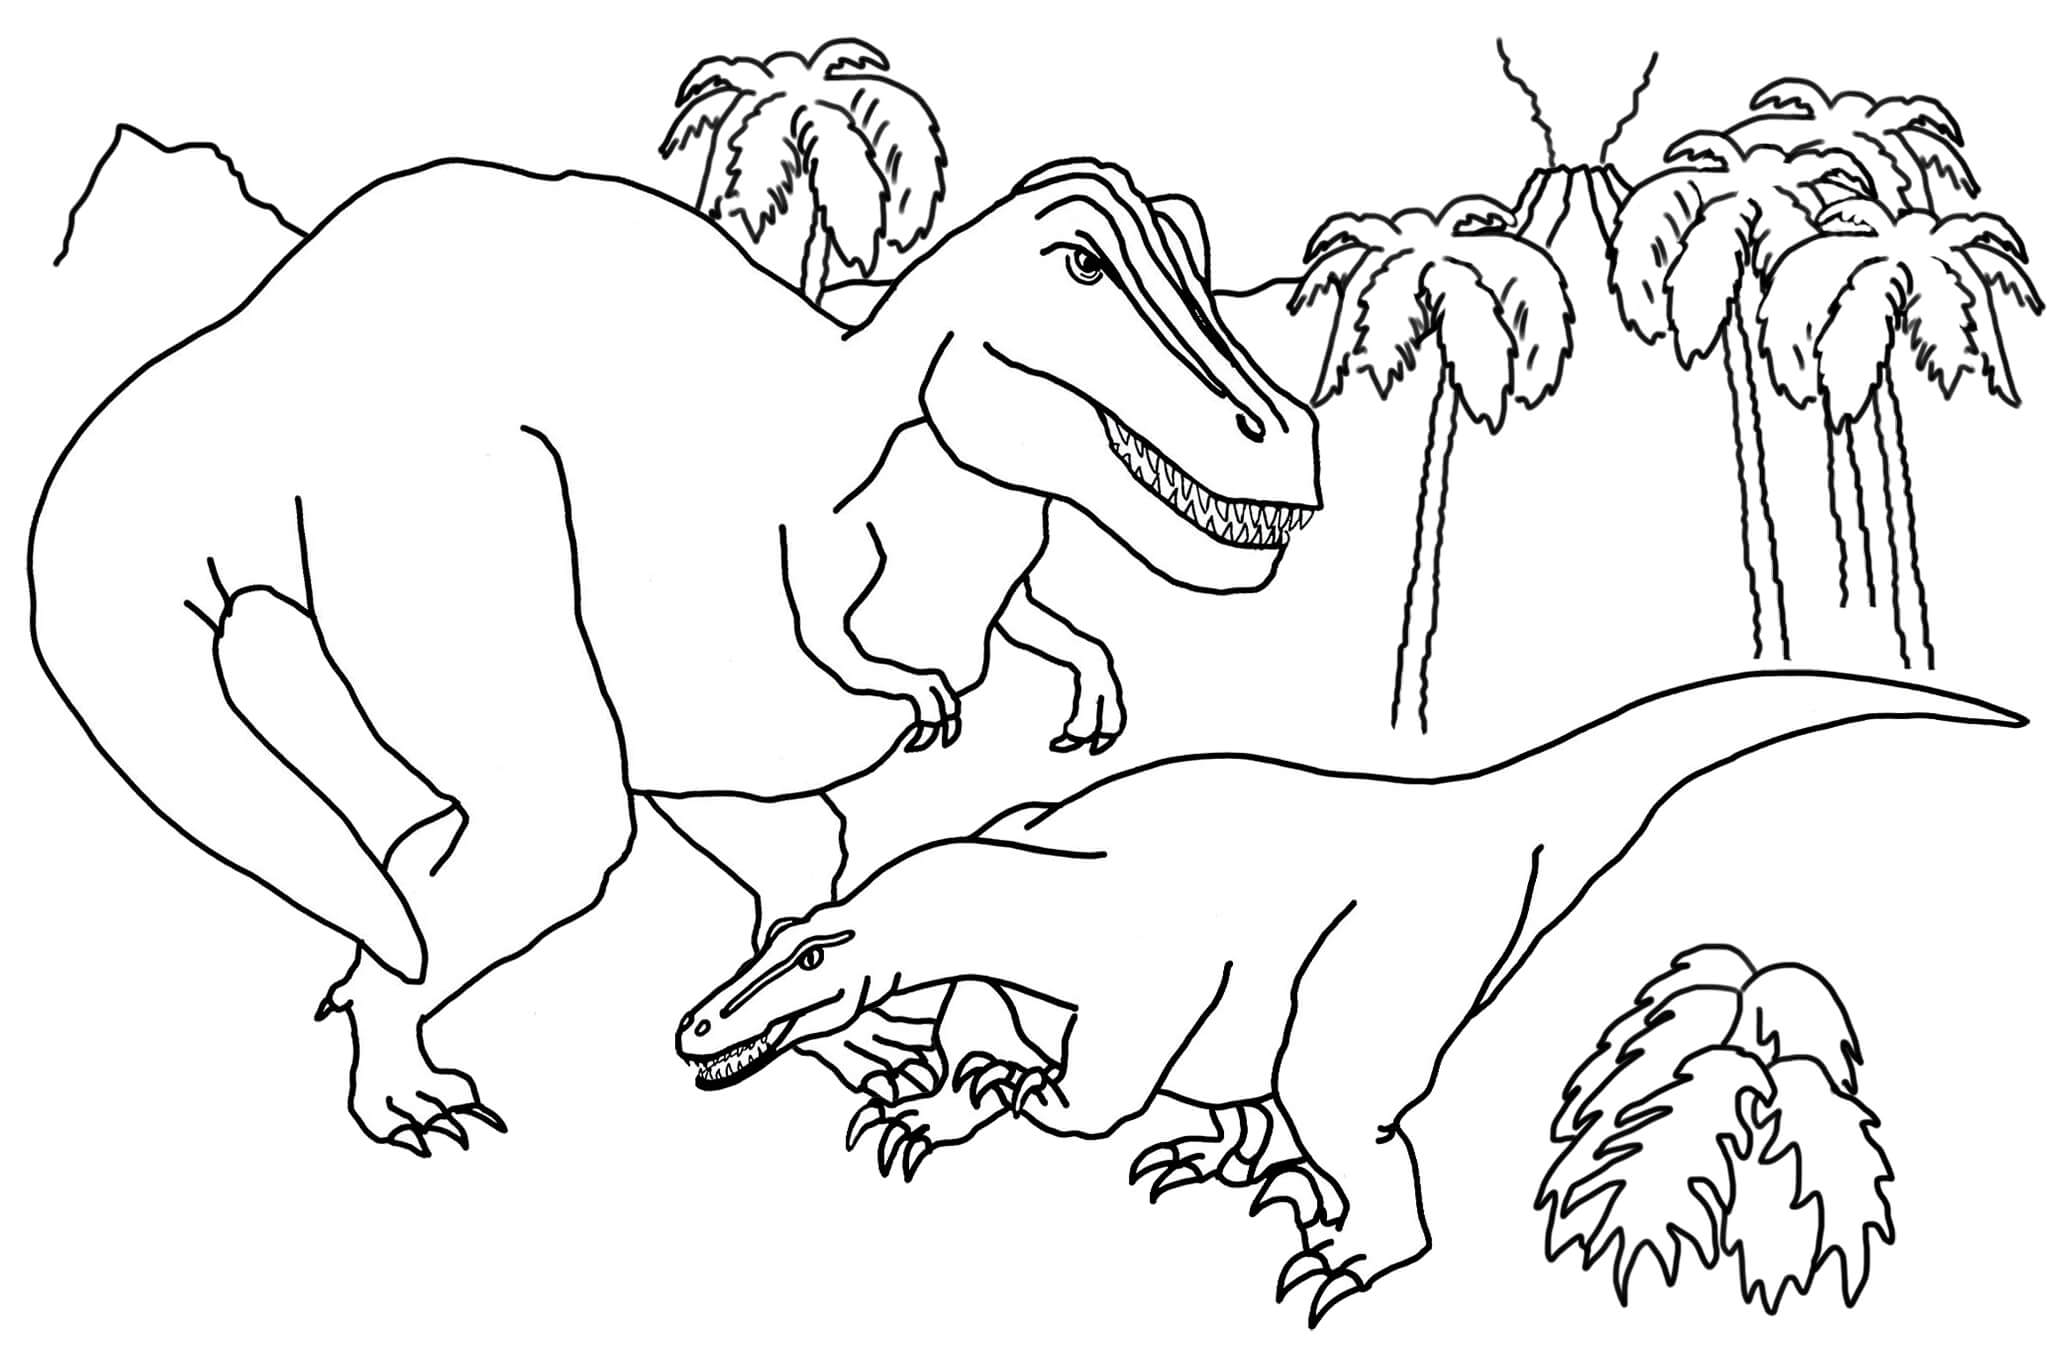 Moederdinosaurus en babydinosaurus